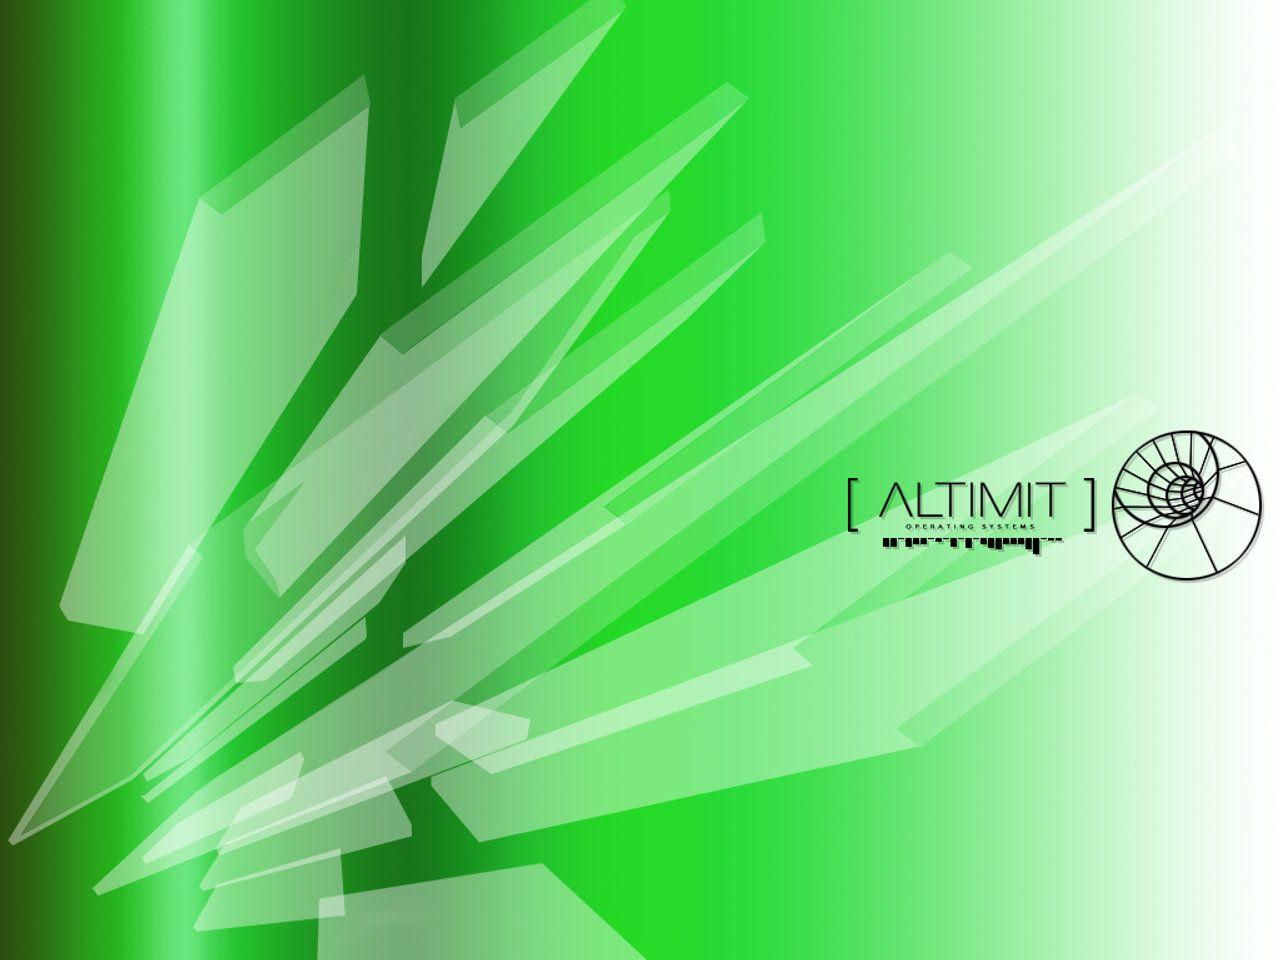 dot hack ALTIMIT OS green Wallpaper. Video games Wallpaper